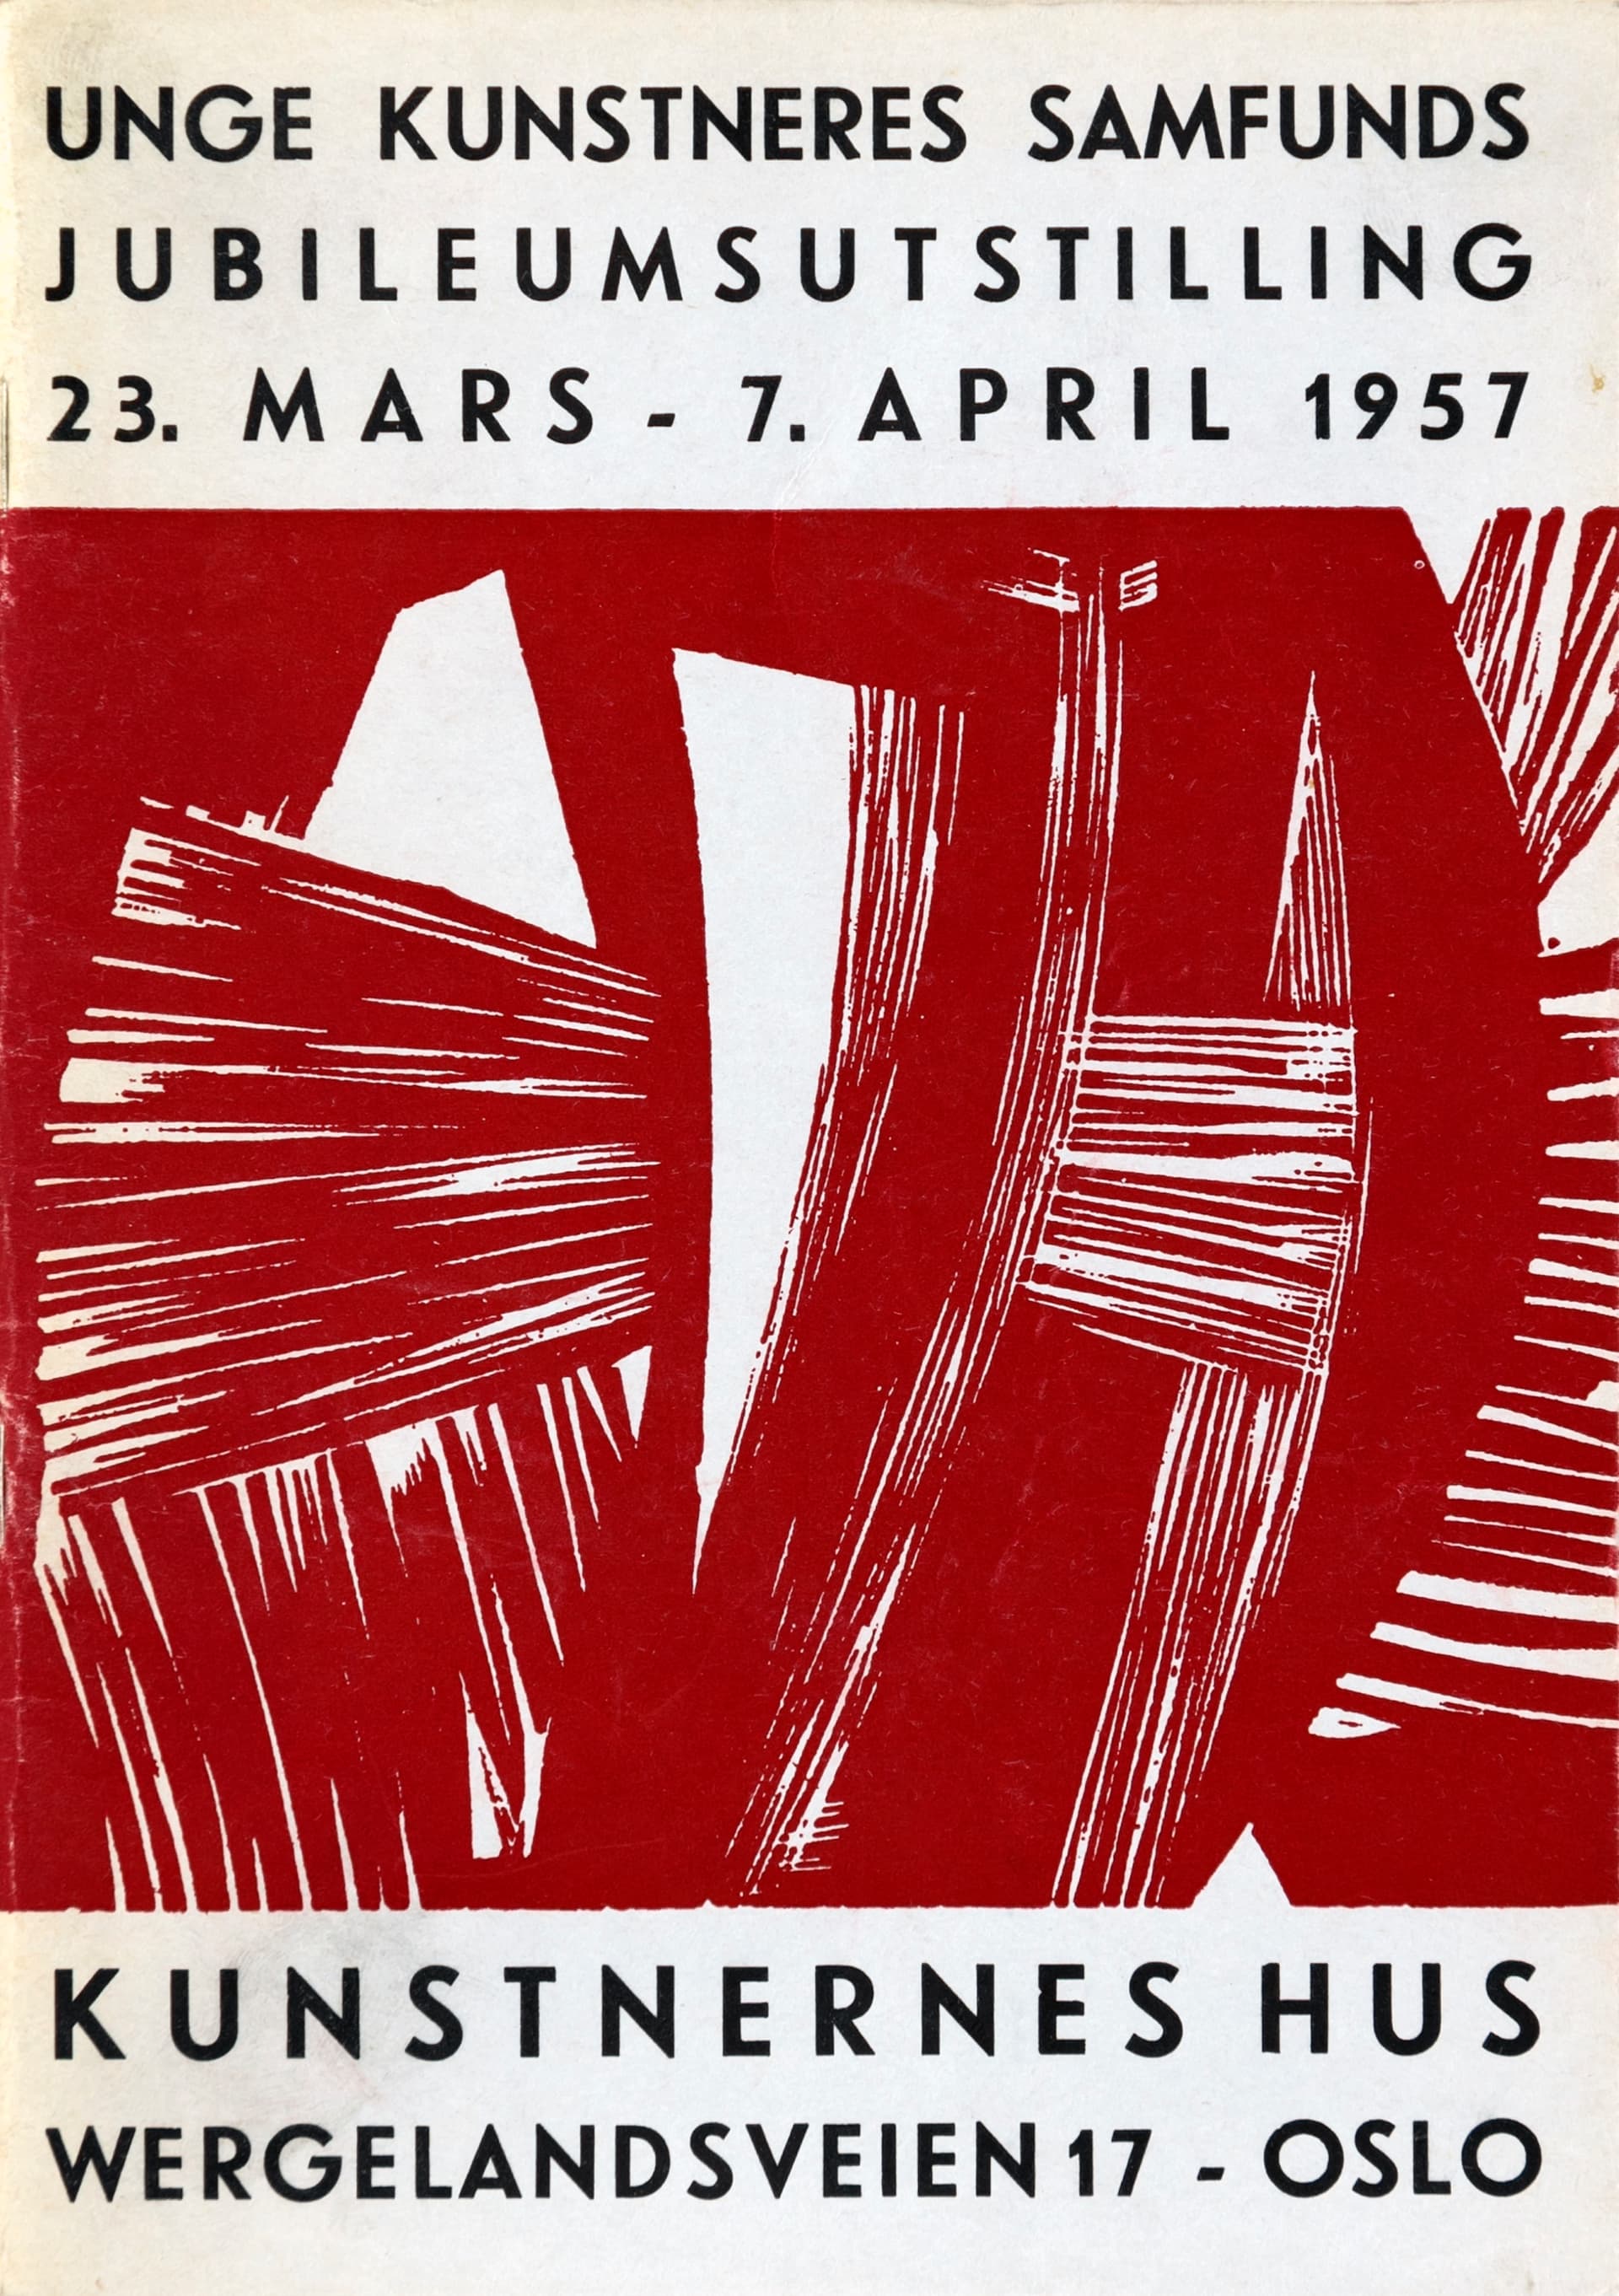 UKS jubileumsutstilling Mar Apr1957